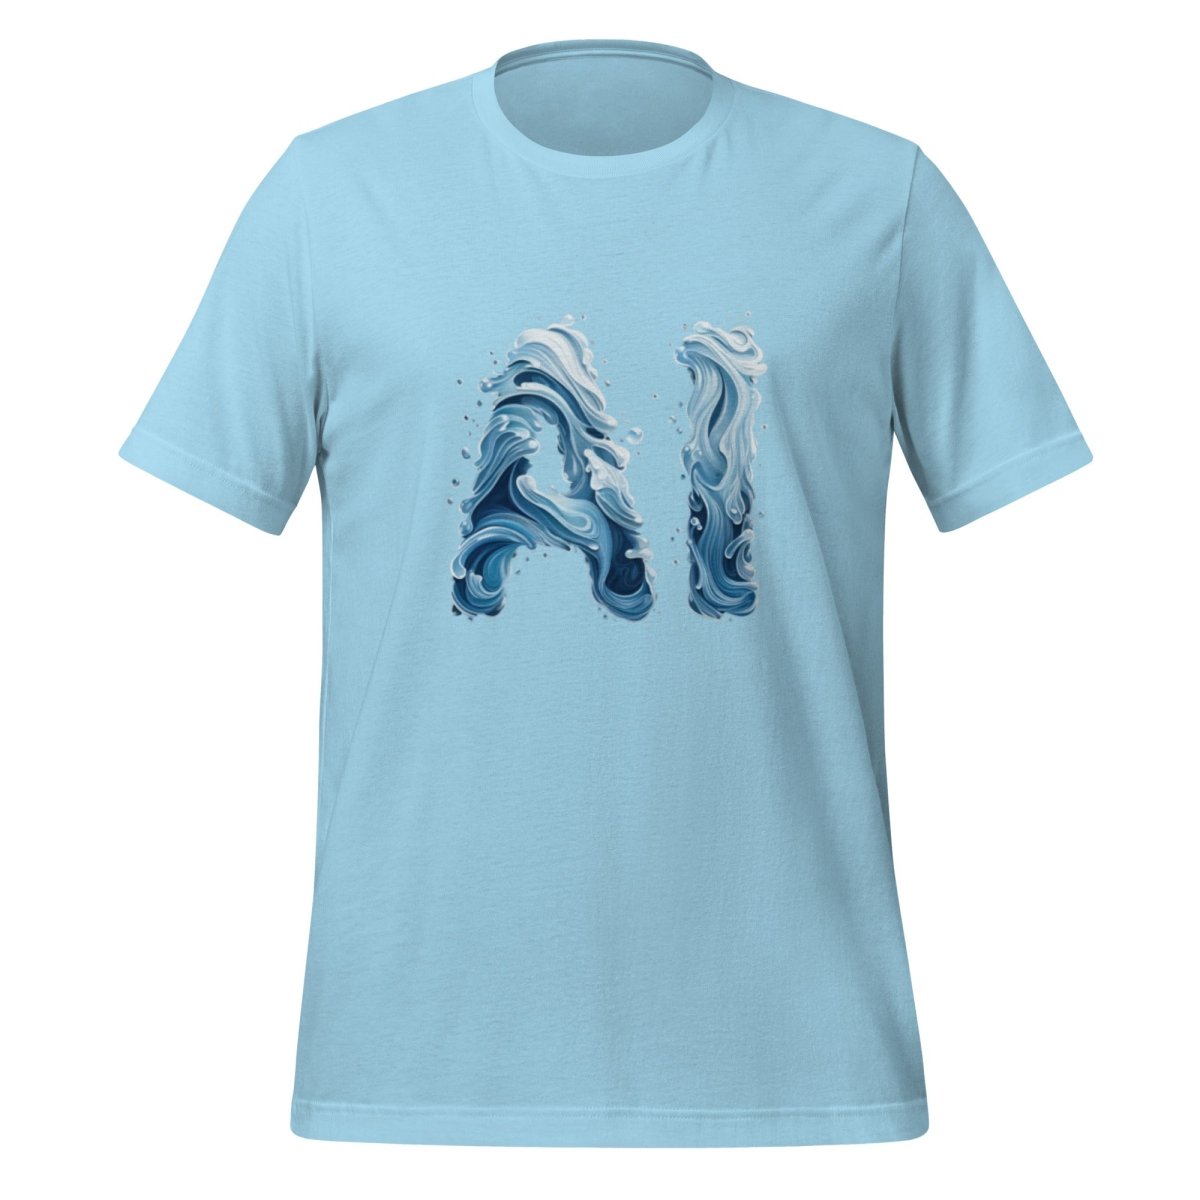 Water AI T - Shirt (unisex) - Ocean Blue - AI Store